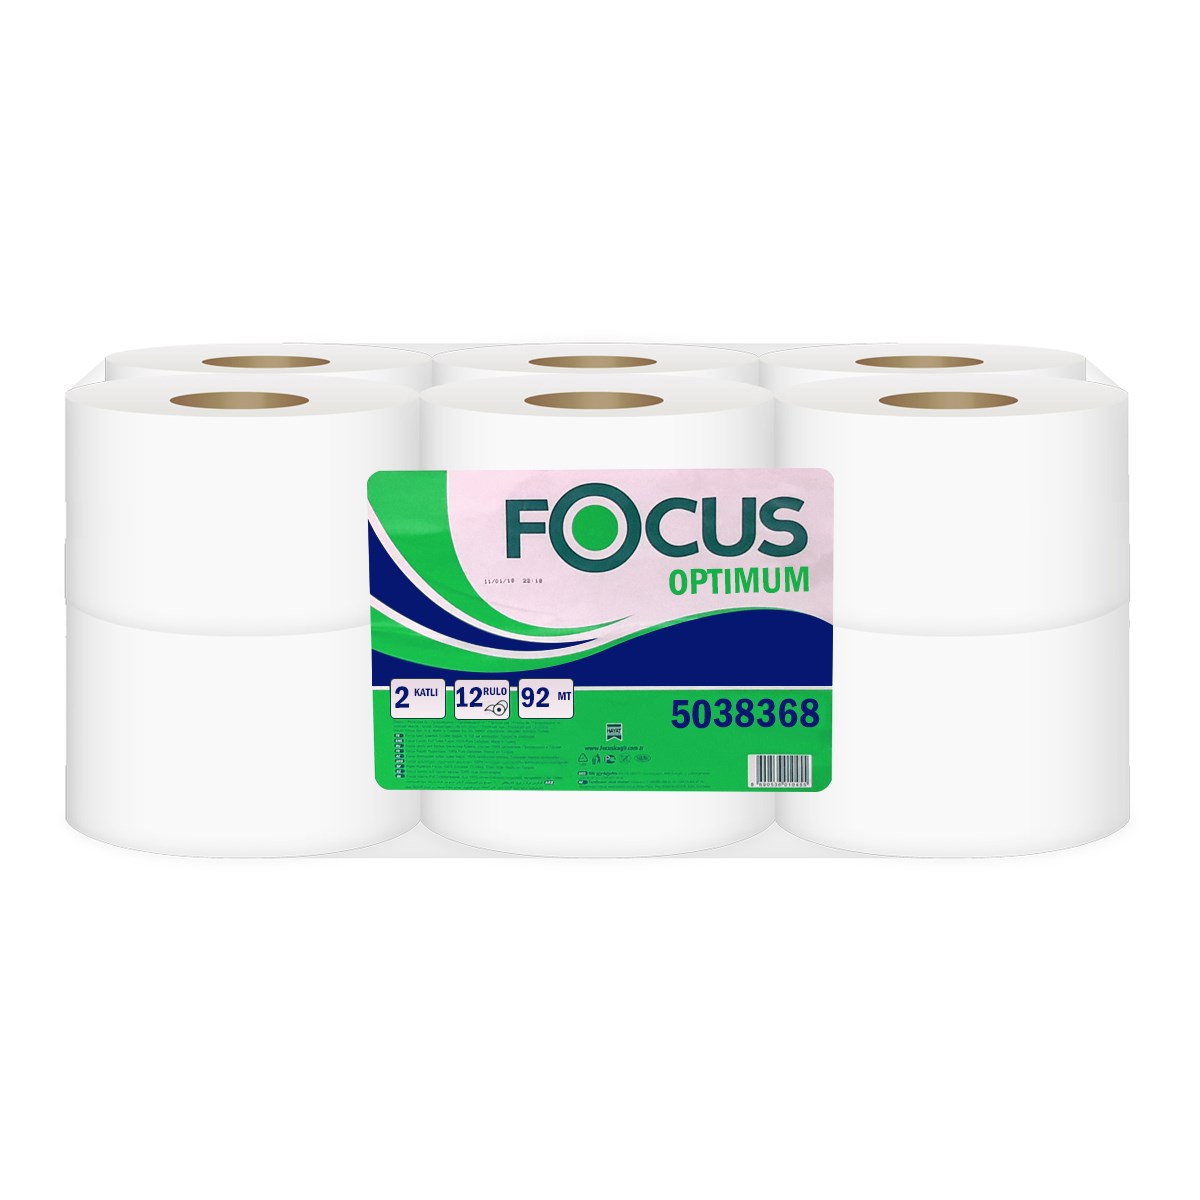 Focus Optimum Mini Jumbo Tuvalet Kağıdı 92 Metre (12 Adet)